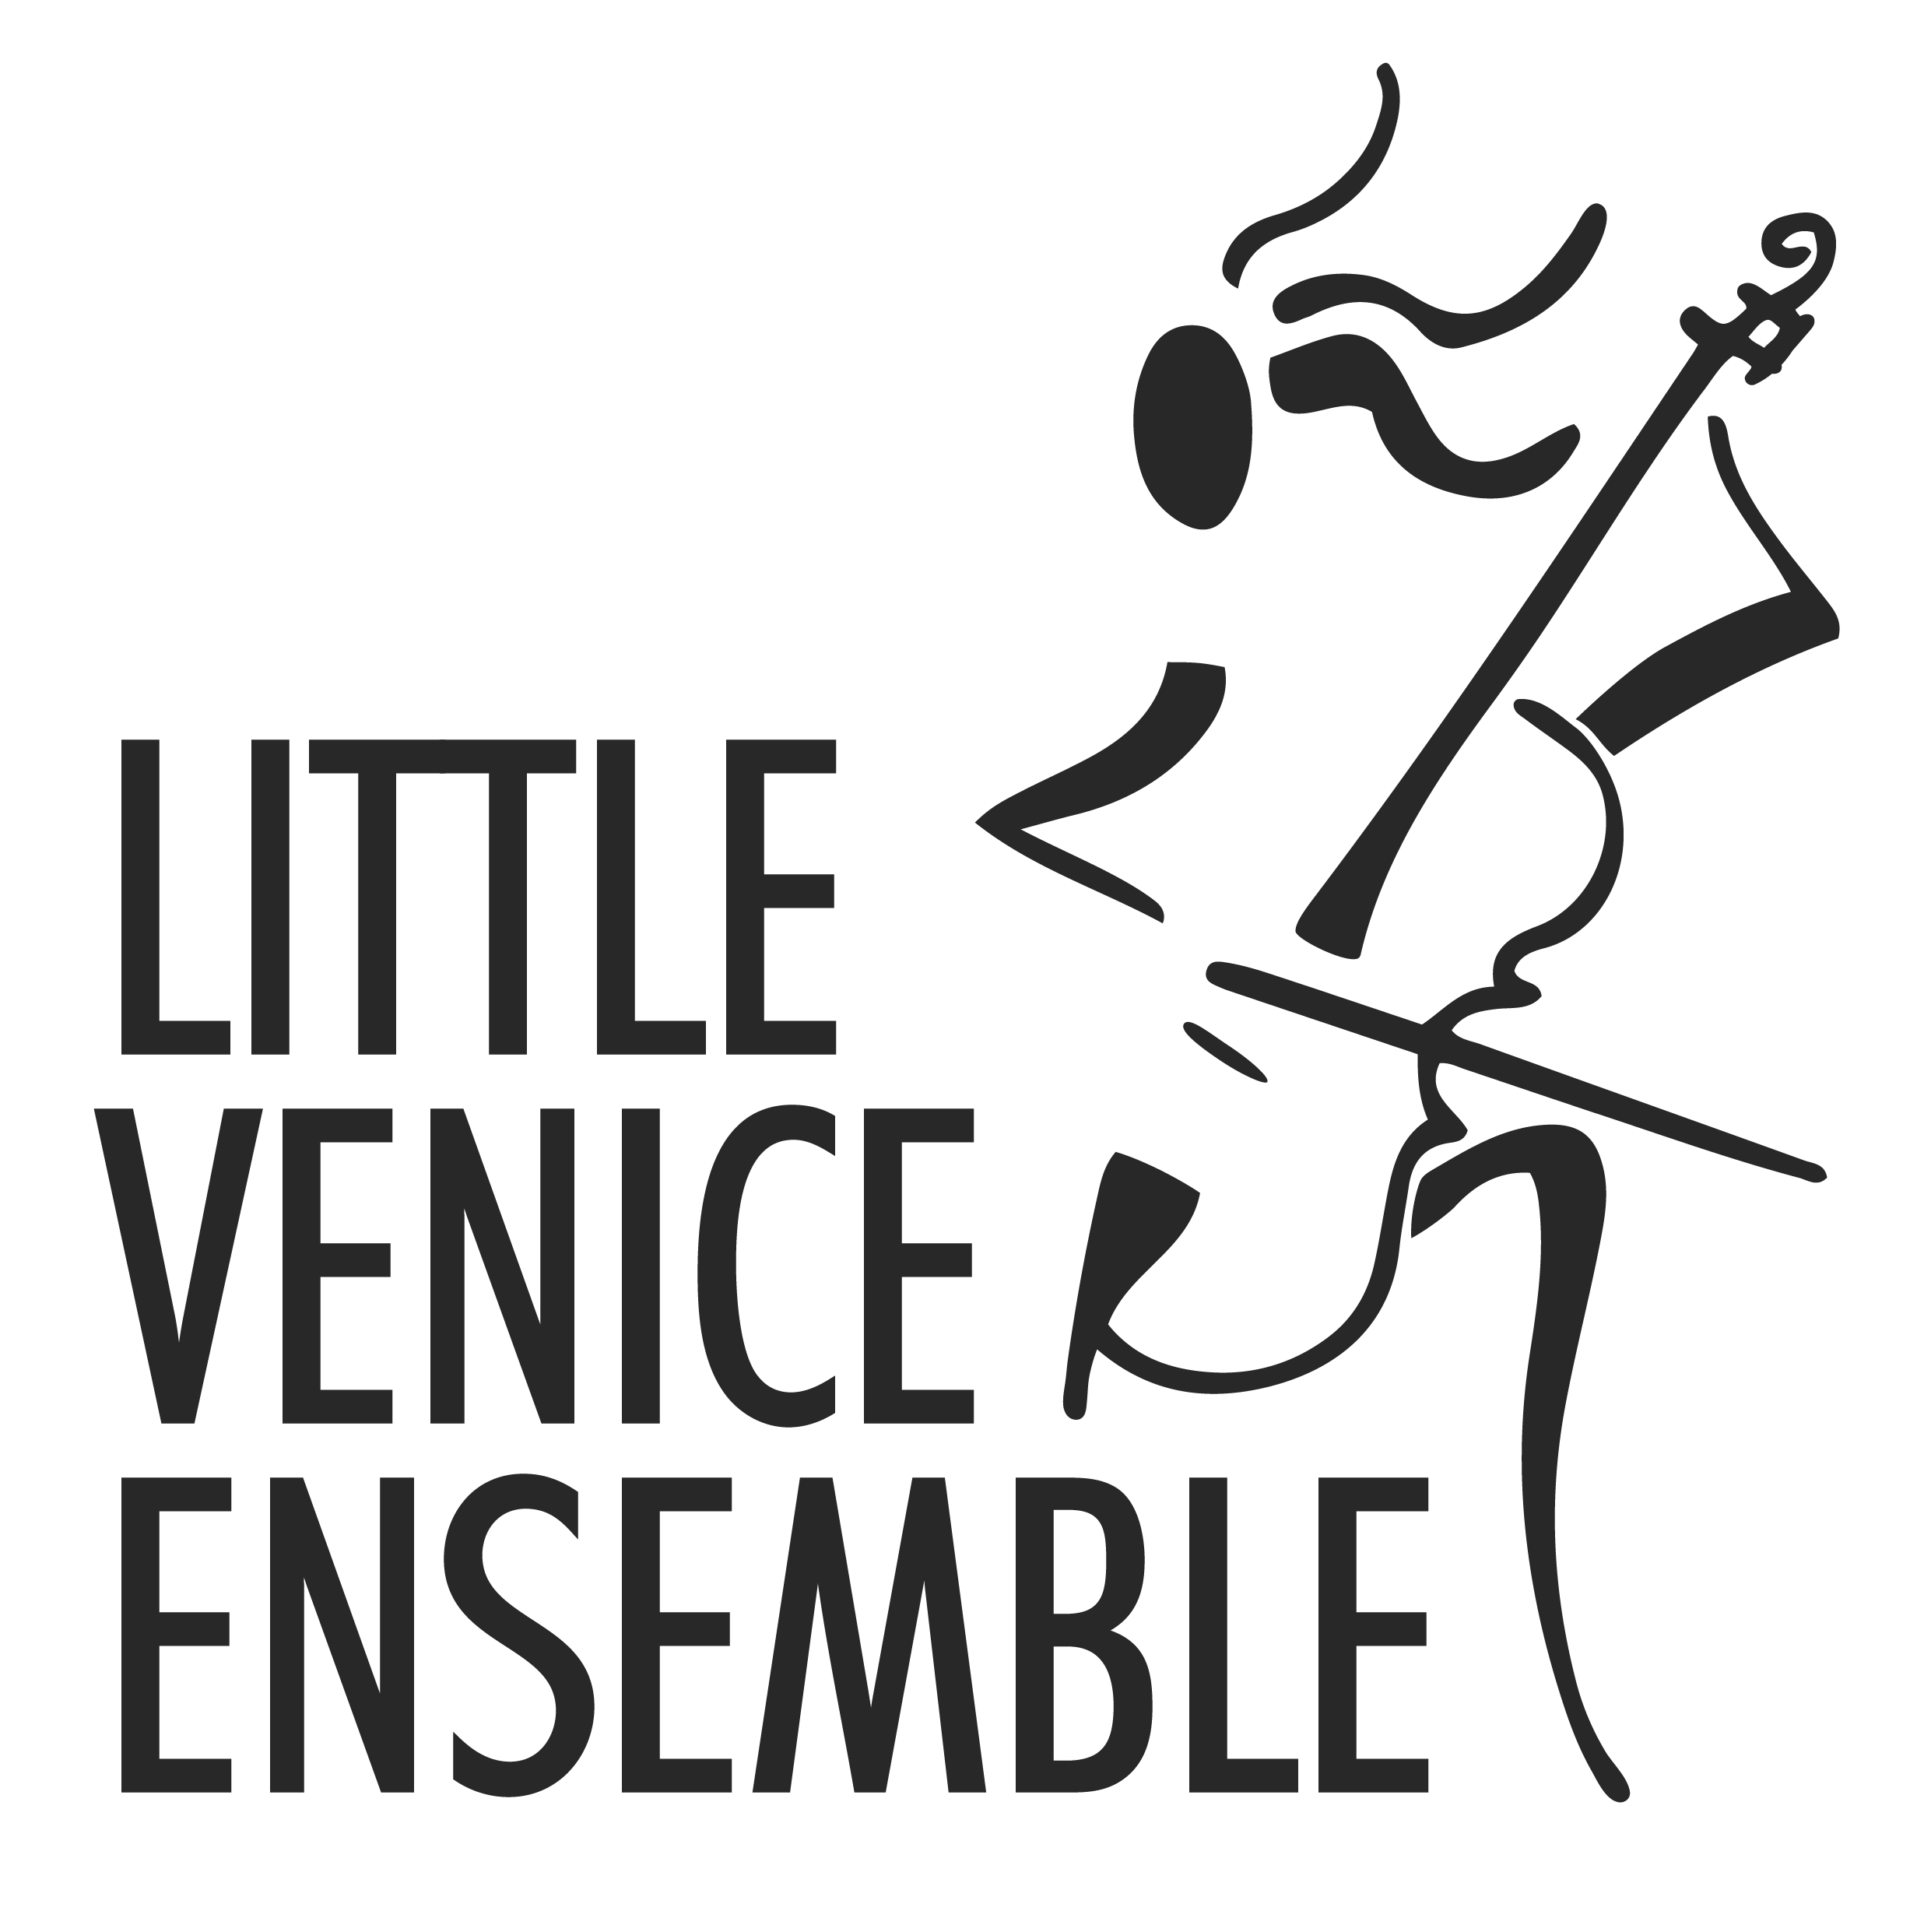 Little Venice Ensemble